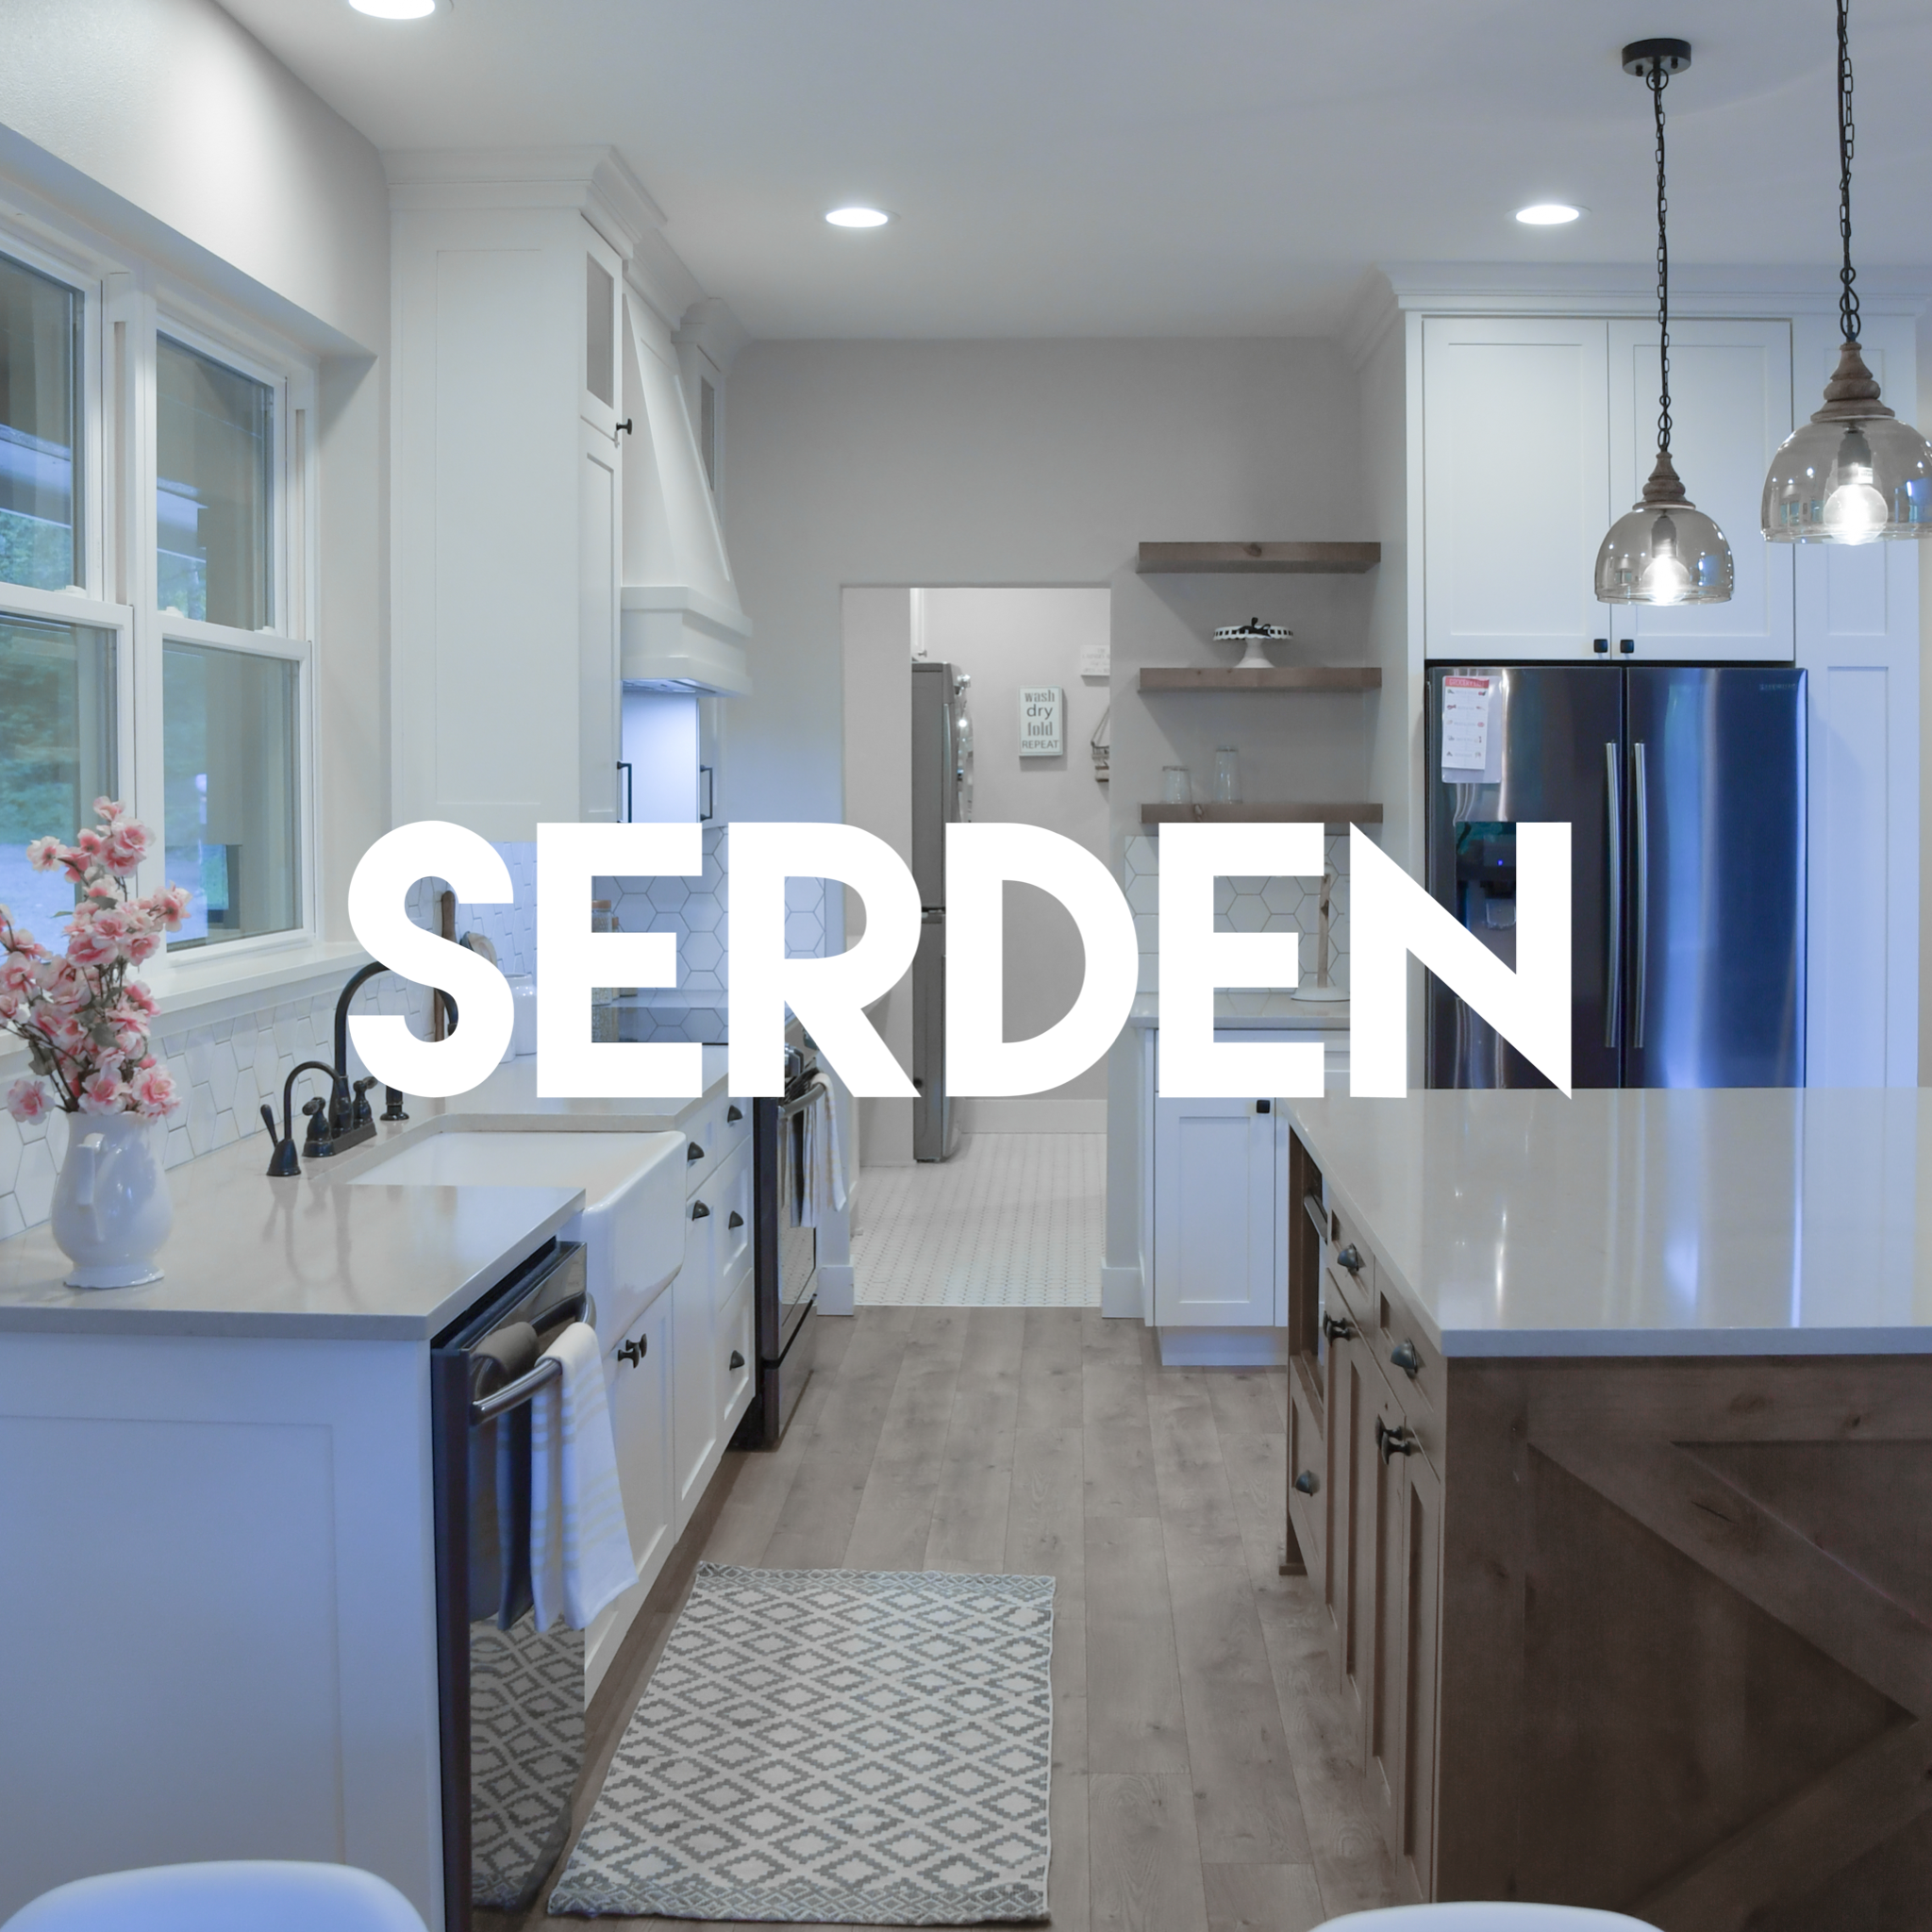 Serden Group, LLC Logo